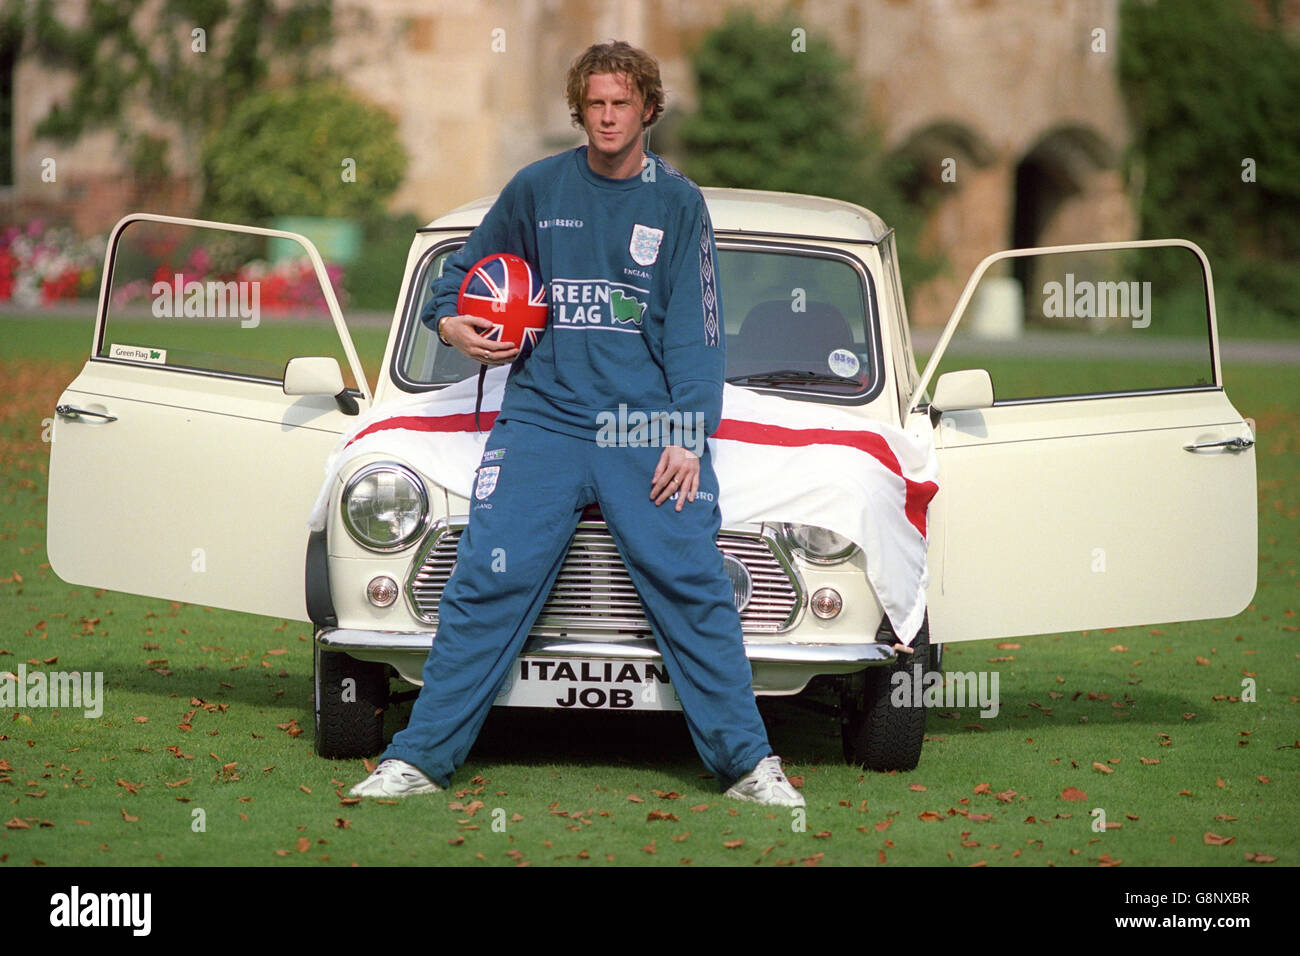 Liverpool winger Steve McManaman a Bisham Abbey dopo l'allenamento con il team inglese. Sta posando con una Mini simile alla famosa auto usata nel film 'il lavoro Italiano'. Foto Stock